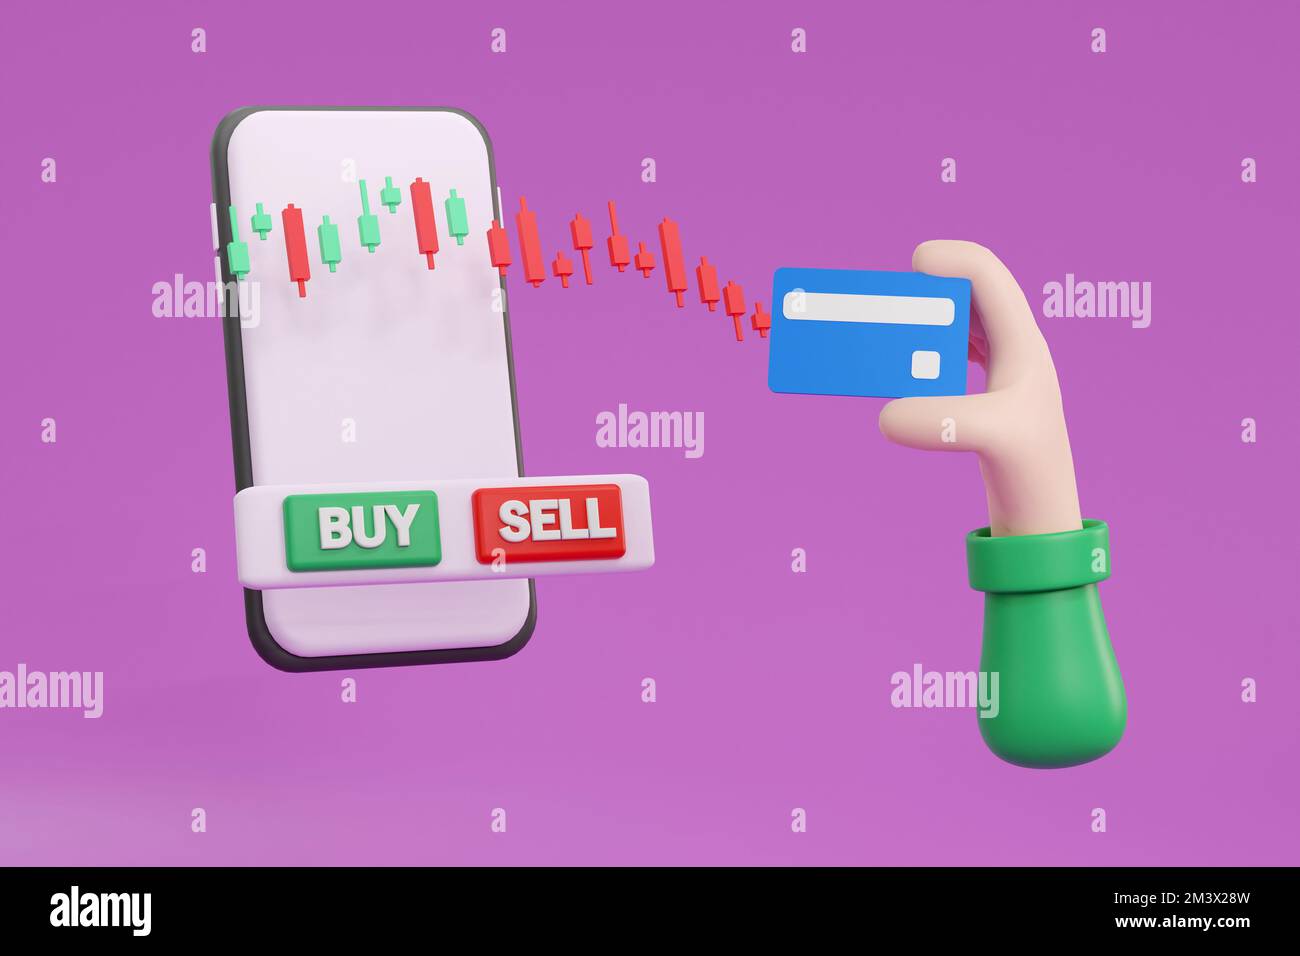 3D. Kreditkarte und Smartphone mit Börsen-App auf dem Bildschirm, um Zahlungen oder Transaktionen durchzuführen Stockfoto